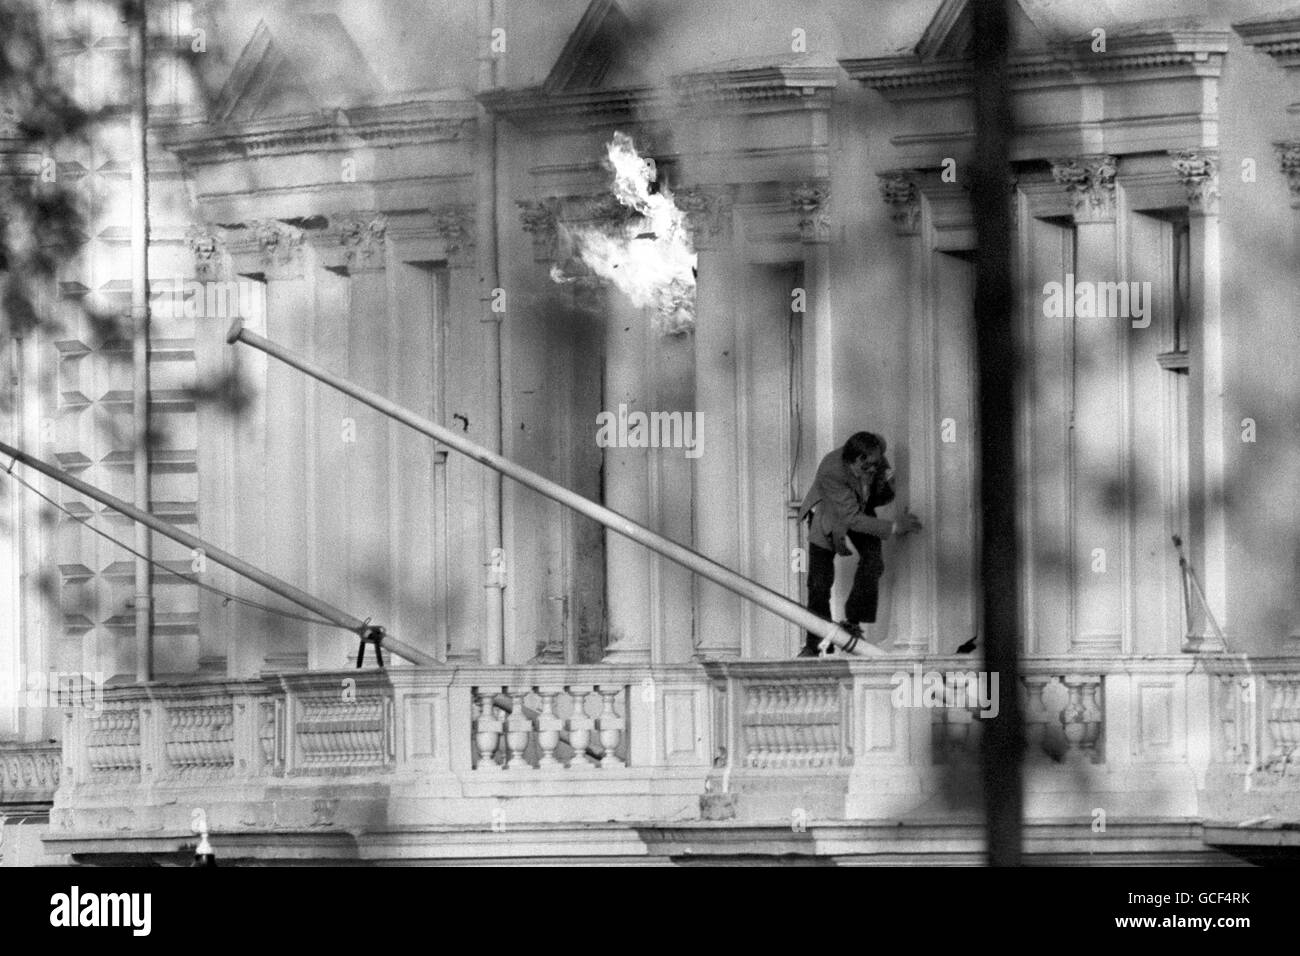 Der BBC-Tonaufrichter SIM Harris, eine der britischen Geiseln, kriecht in Sicherheit, als Flammen aus dem Fenster der iranischen Botschaft in London auflodern, als zwei Explosionen die sechstägige Belagerung des Gebäudes im Princes Gate beendeten. Vierzehn Geiseln wurden lebend herausgebracht und eine Reihe von Schützen festgenommen. Stockfoto